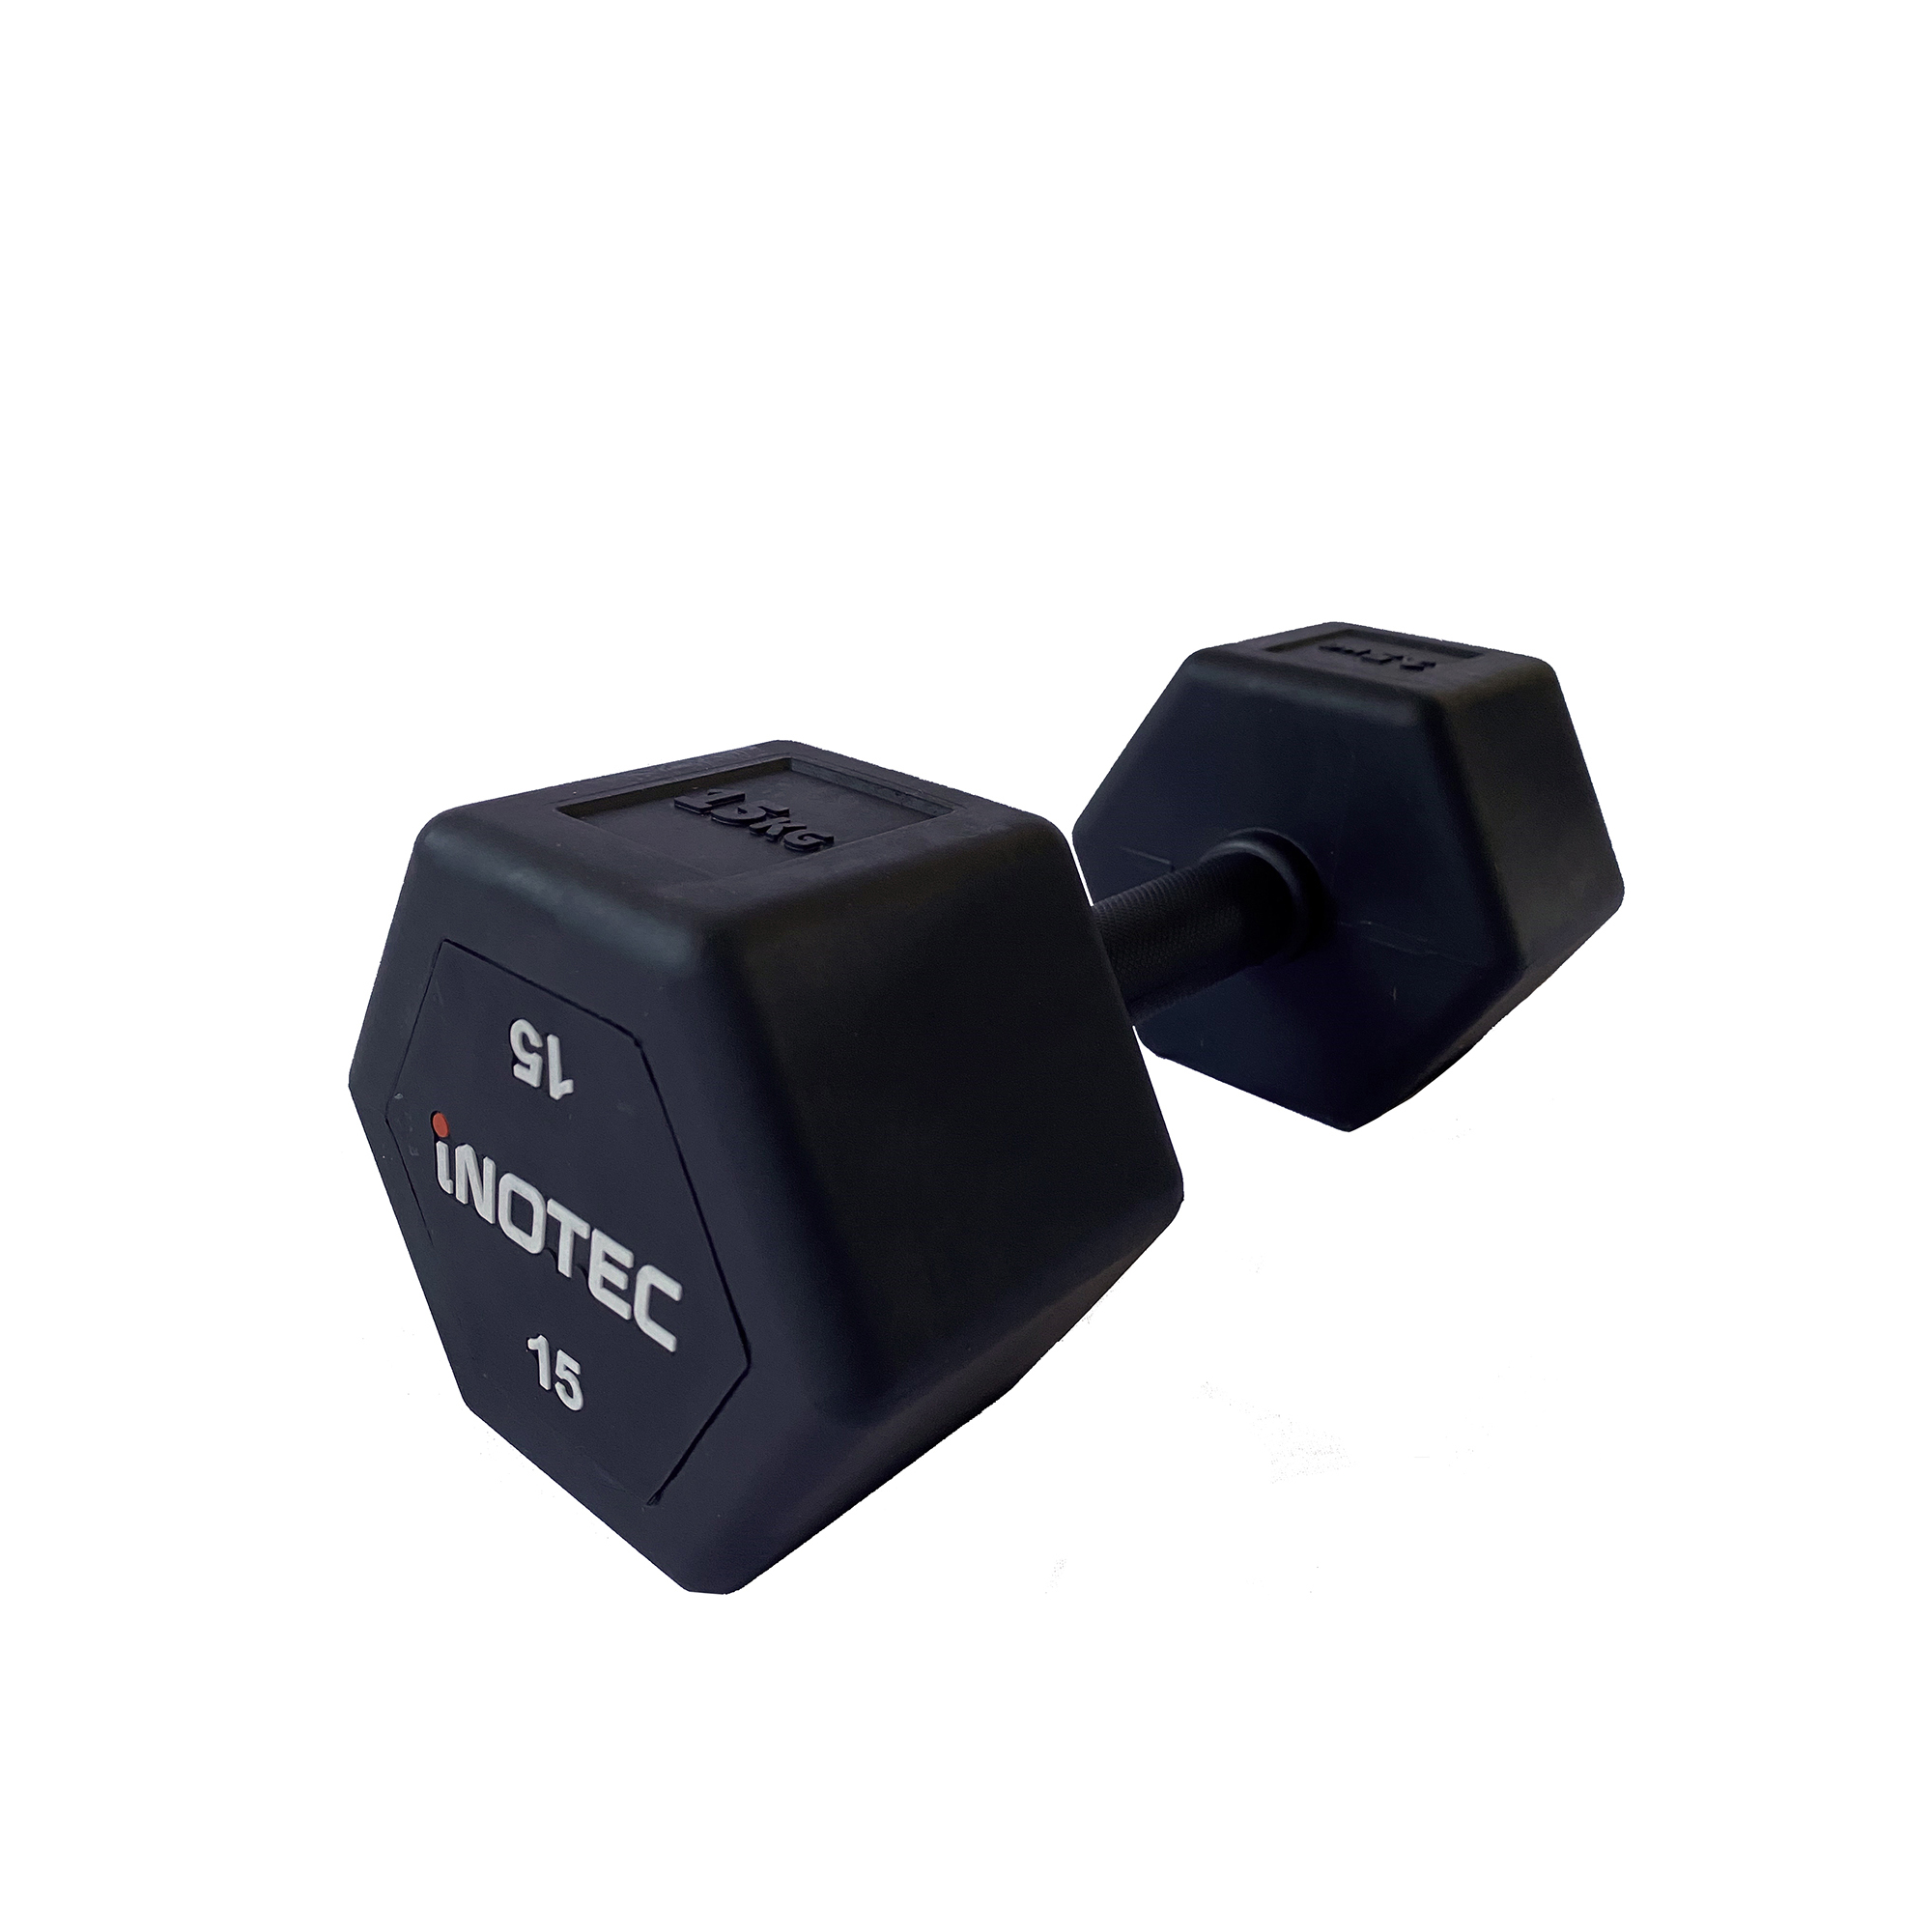 Brug Inotec Hexagon Håndvægt 15 kg til en forbedret oplevelse